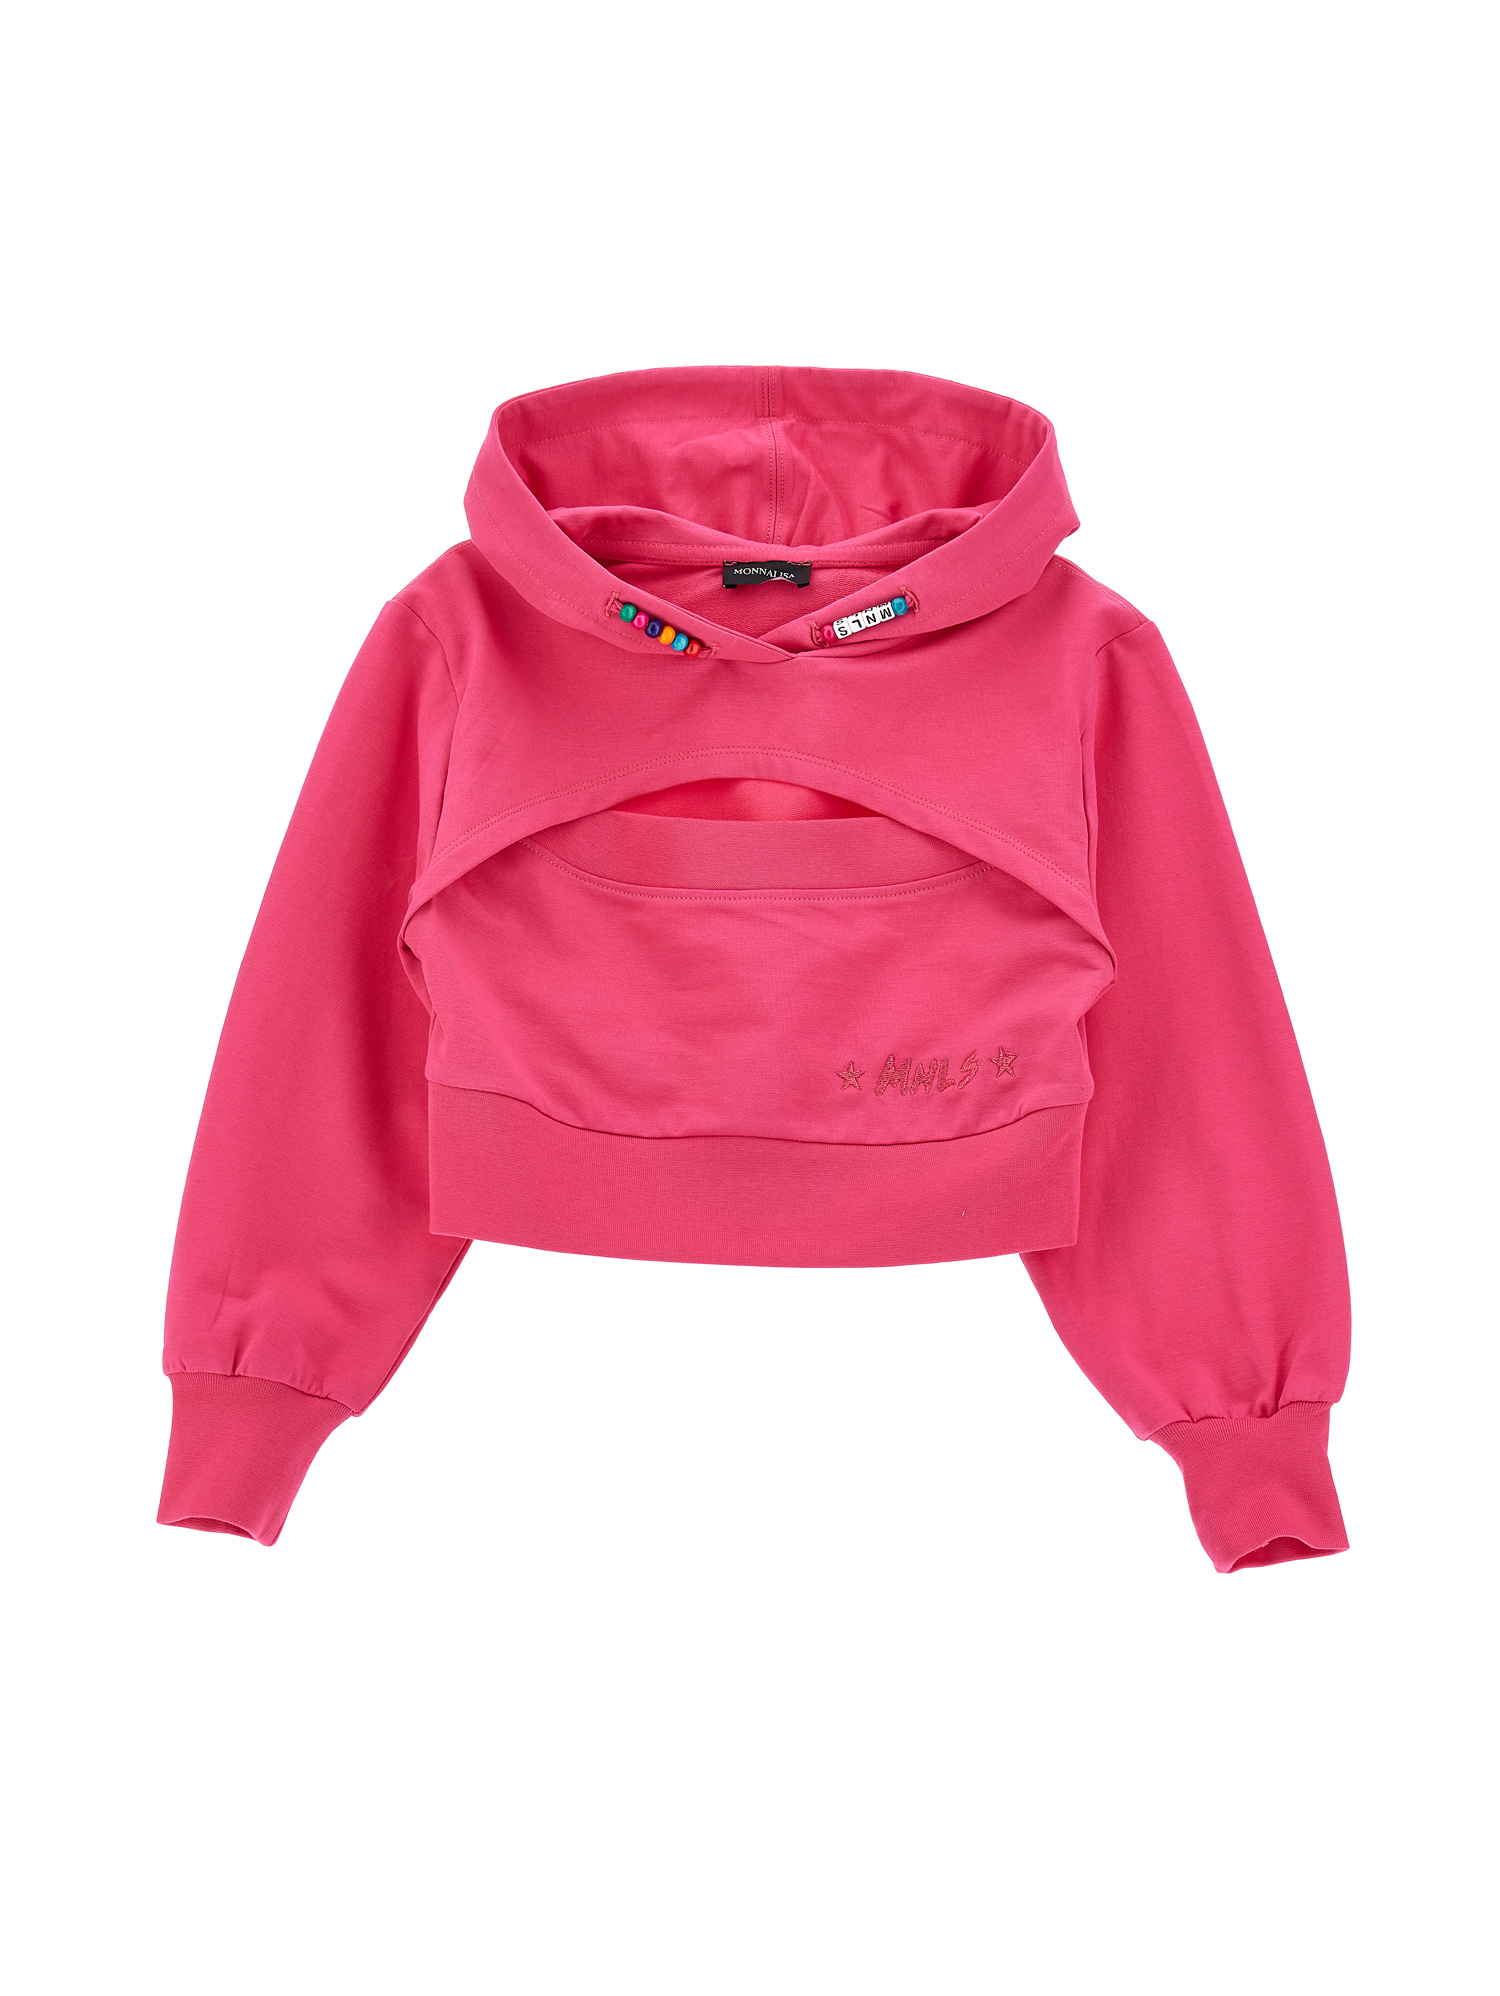 Monnalisa Kids'   Cropped Hooded Sweatshirt In Bright Peach Pink